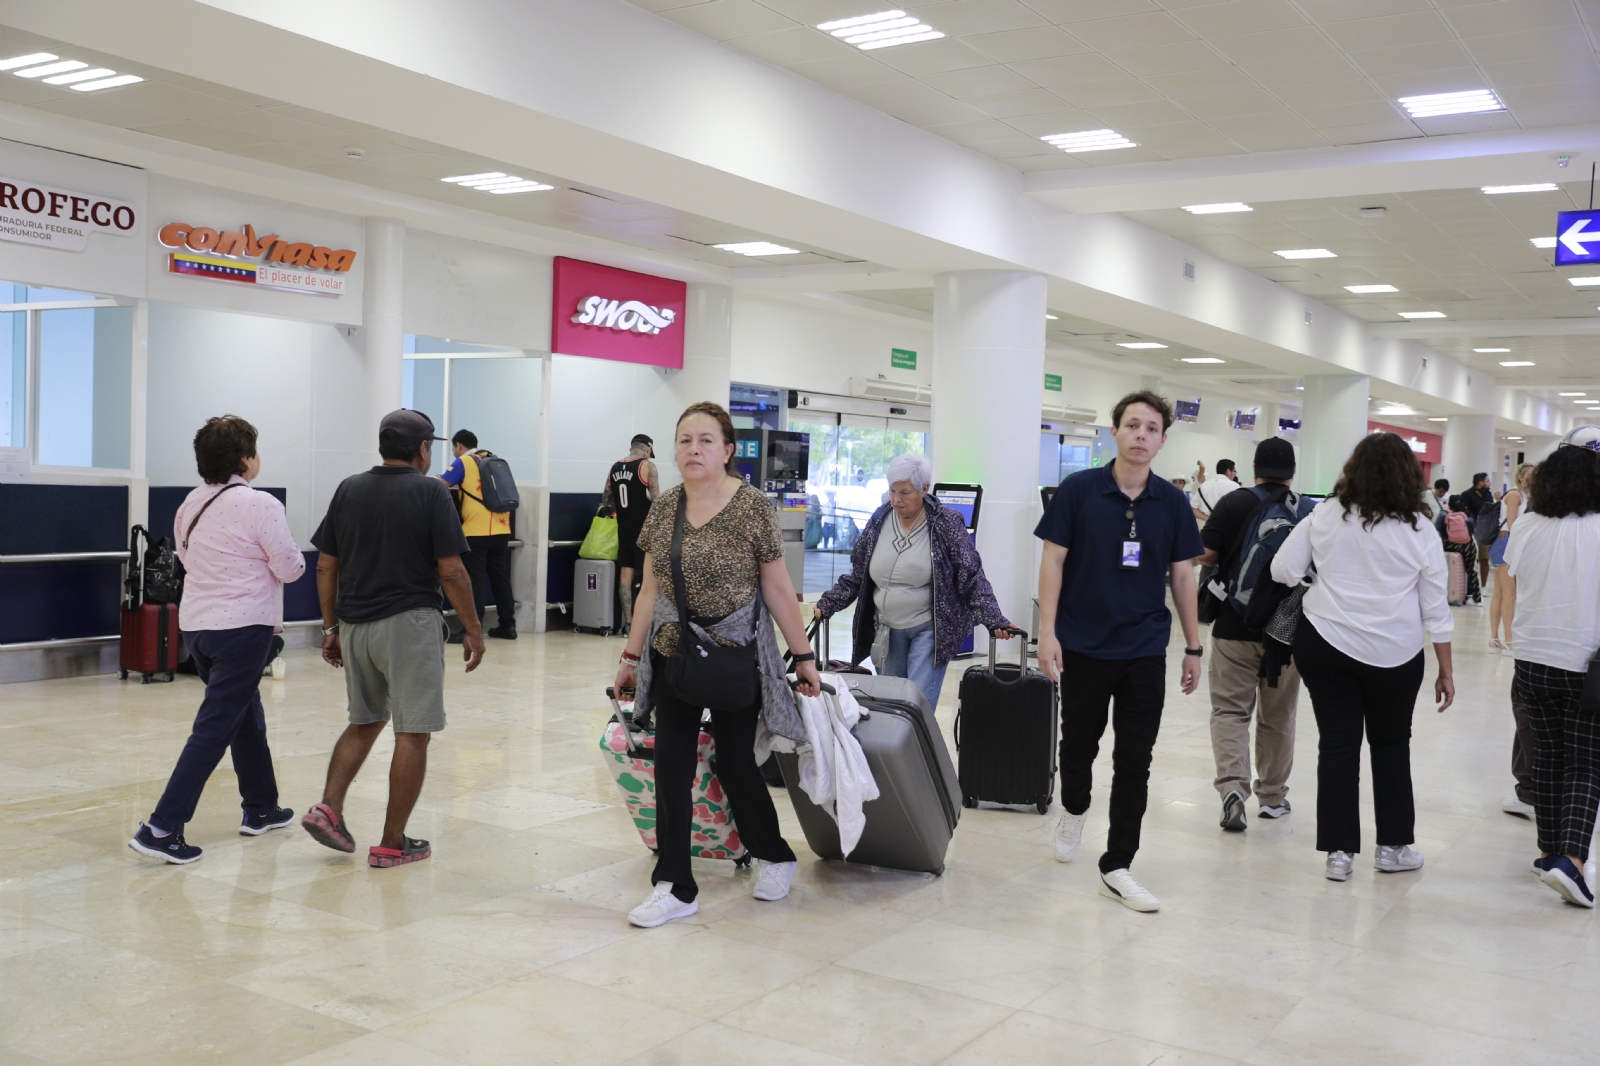 Profeco vuelve a quedar mal en el aeropuerto de Cancún